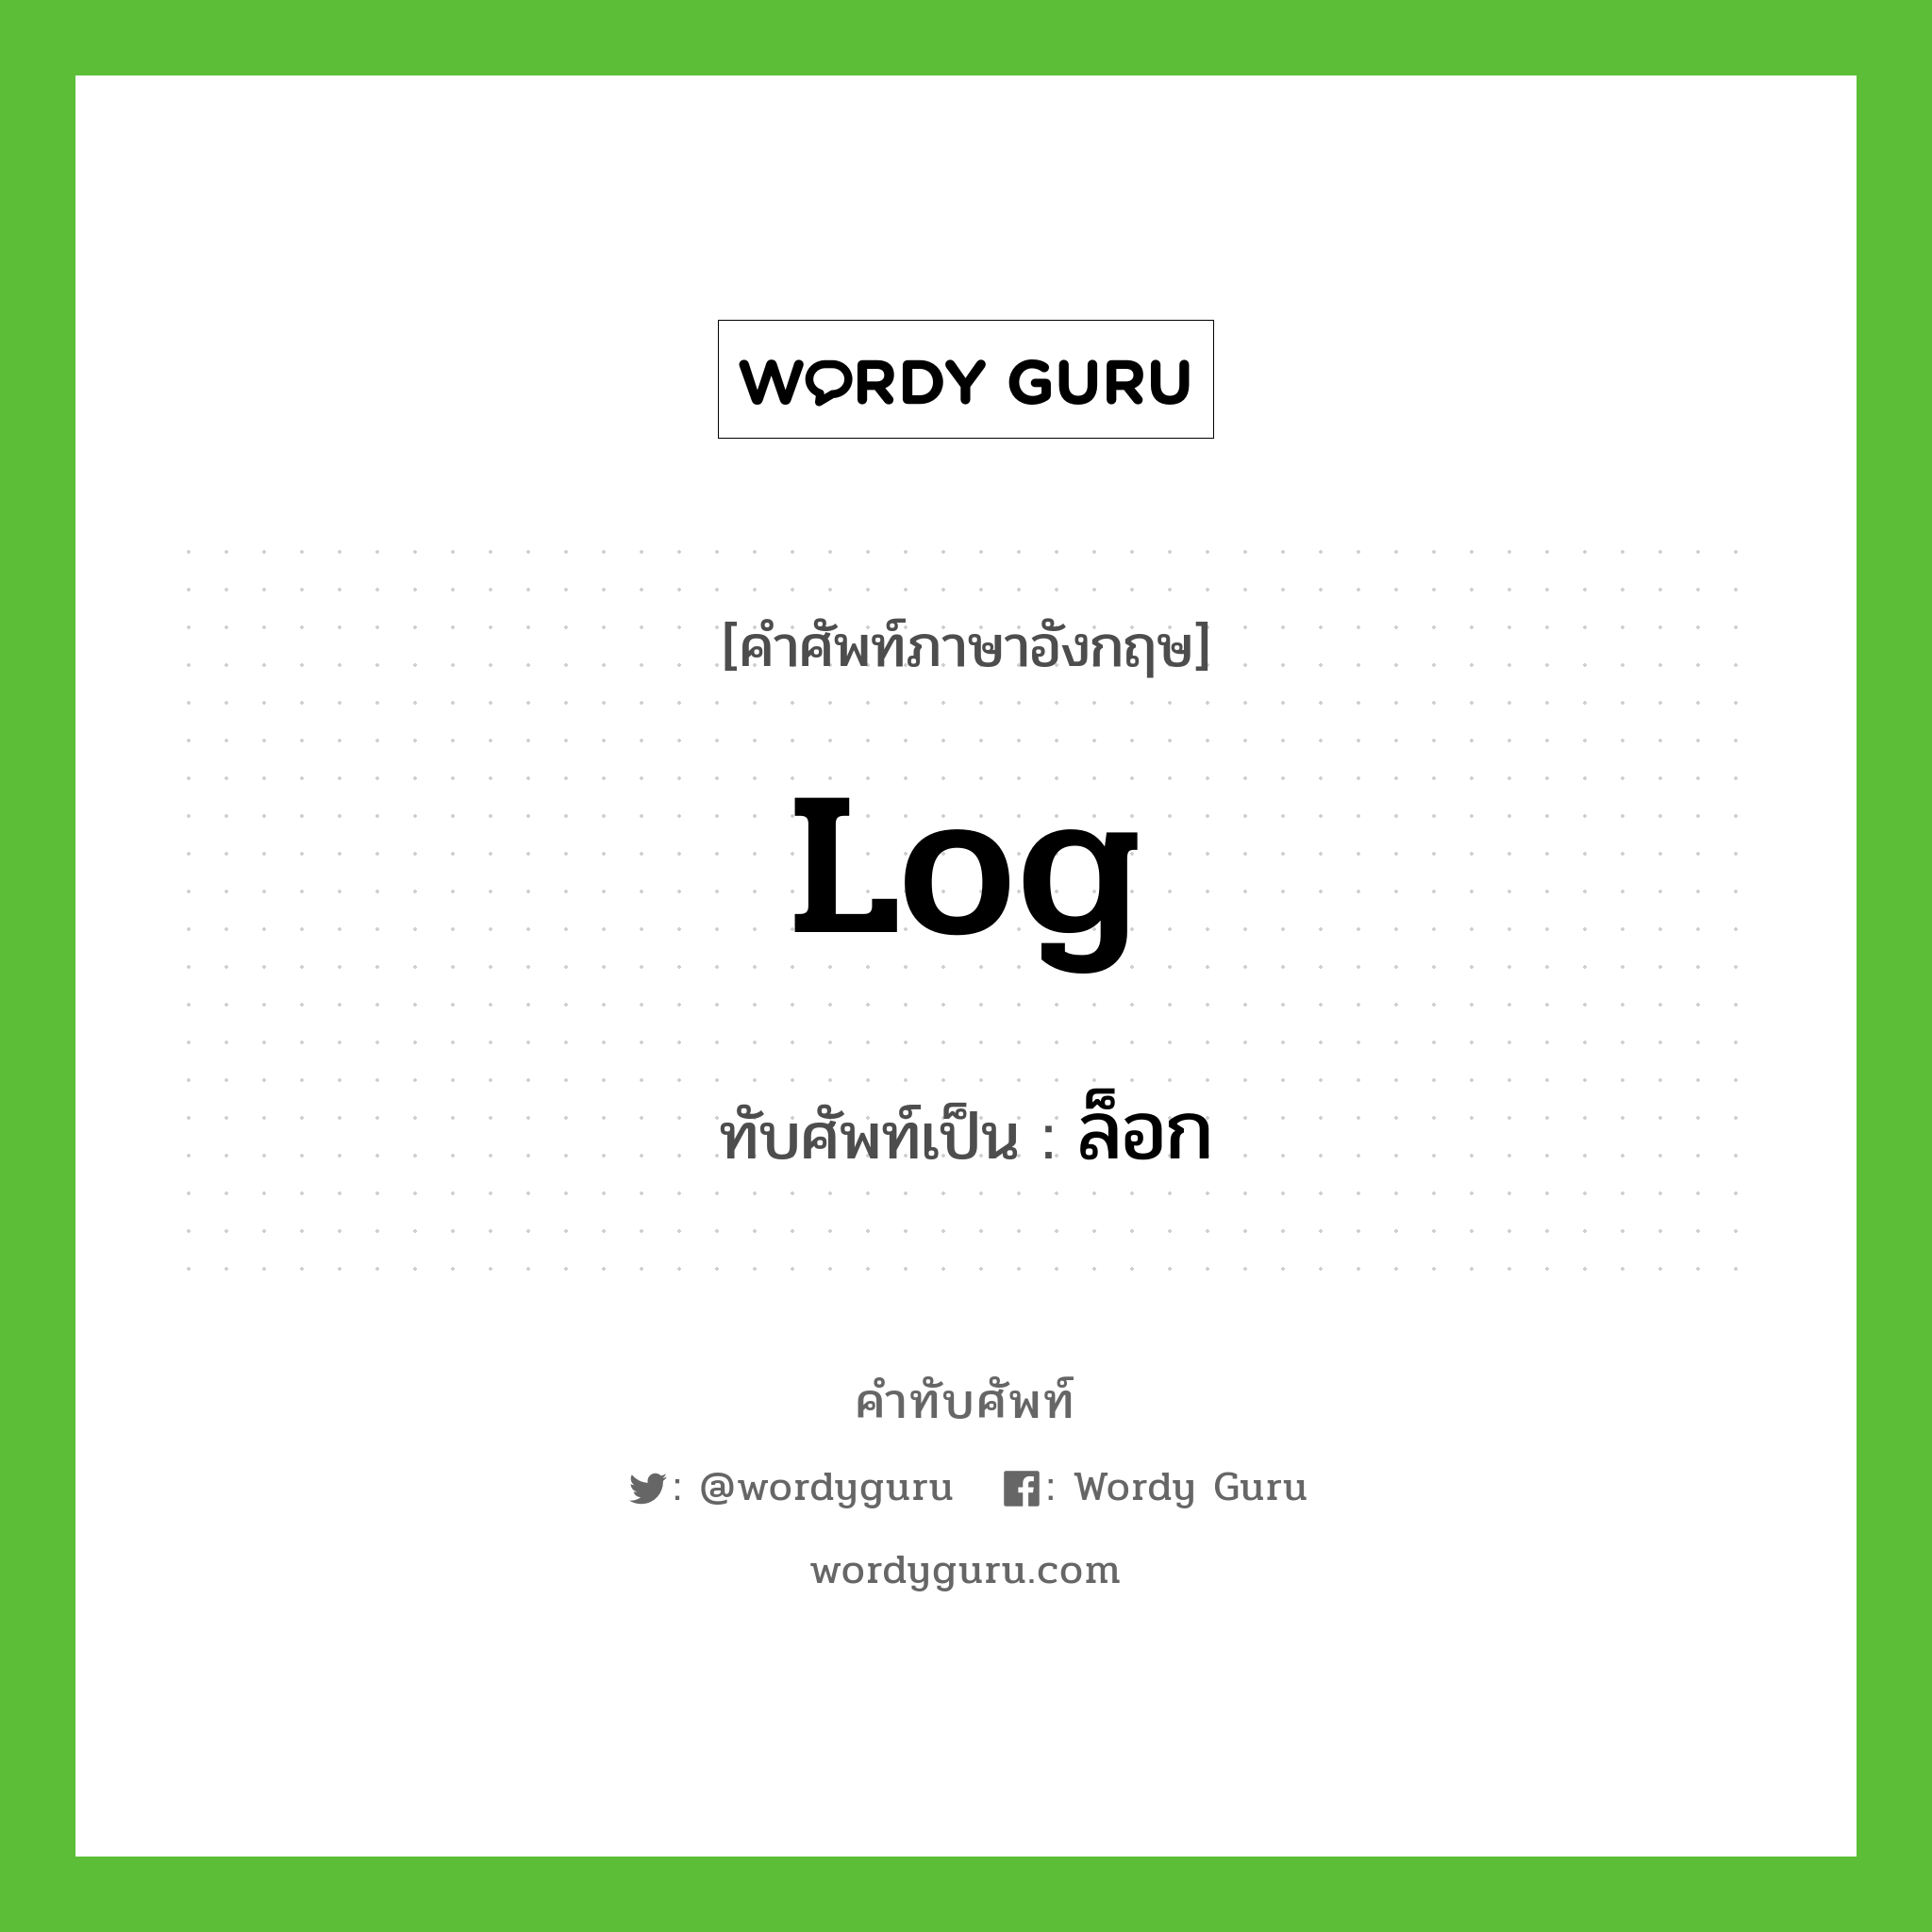 log เขียนเป็นคำไทยว่าอะไร?, คำศัพท์ภาษาอังกฤษ log ทับศัพท์เป็น ล็อก